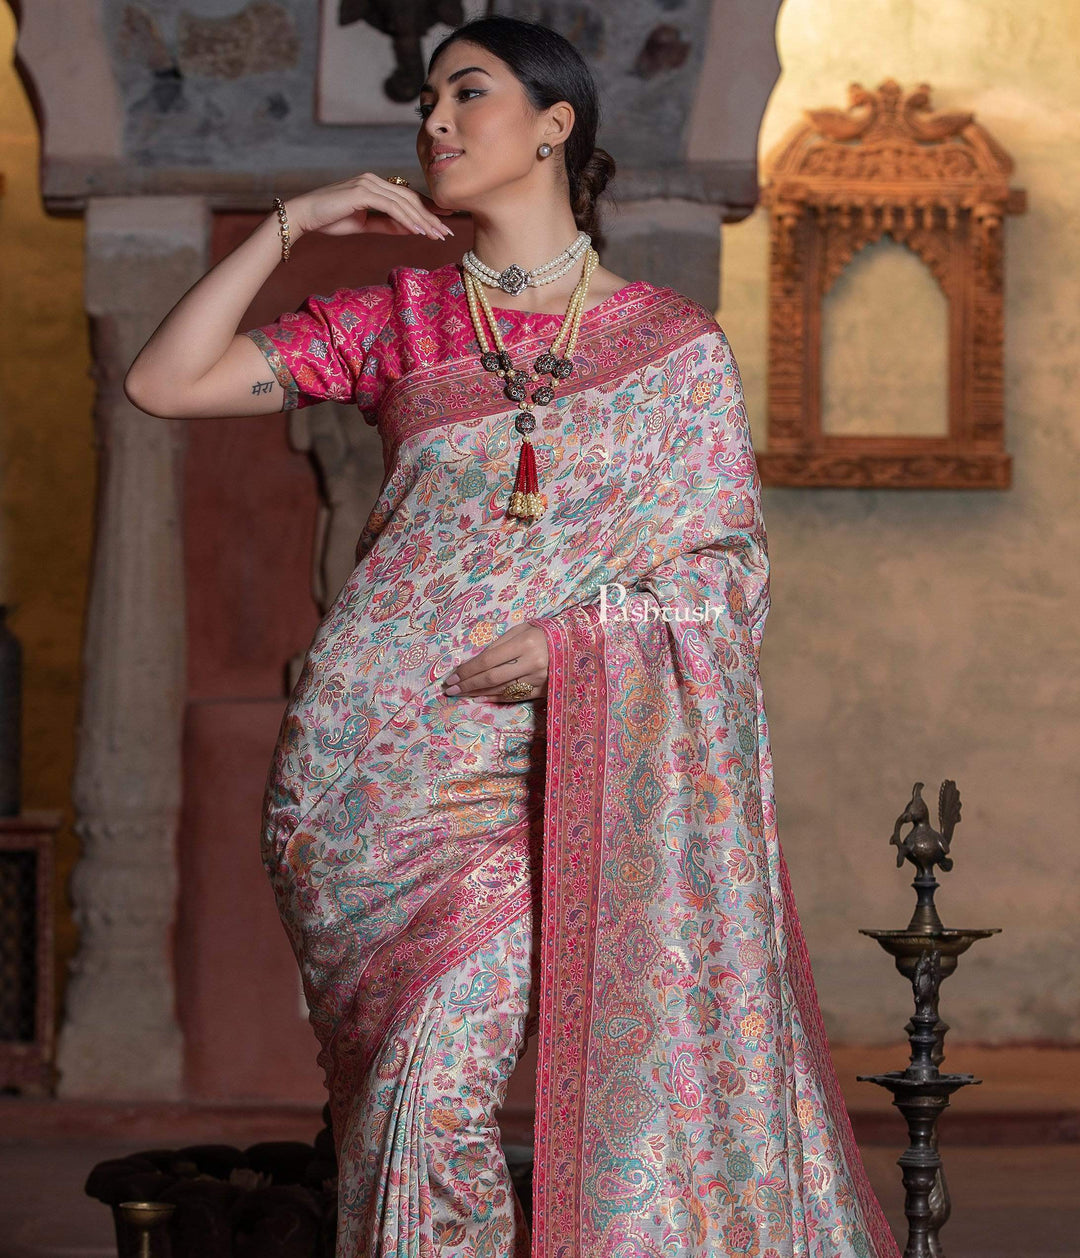 Pashtush Shawl Store 5.80 m x 1 m Pashtush Womens Saree, Kaani Weave, Extra Fine Silk, Pastel Blooms